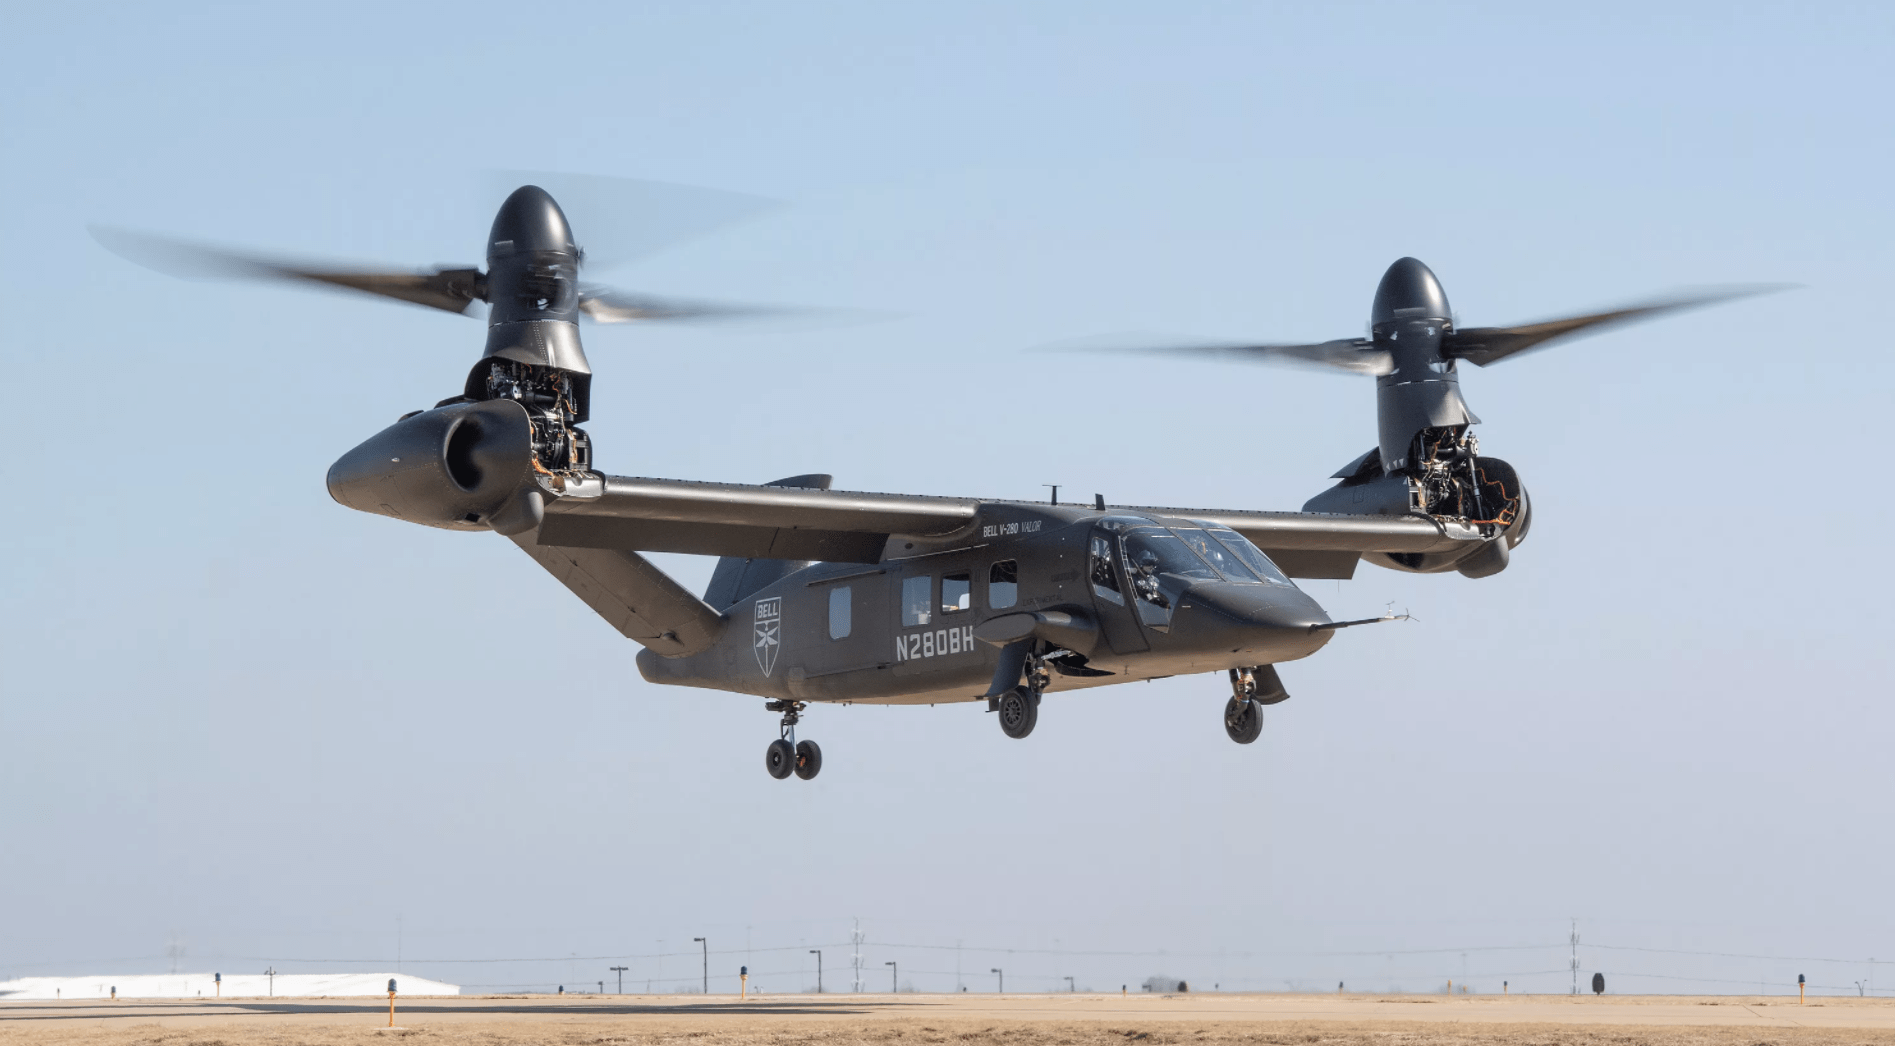 原创v280倾斜旋翼机立足未来直升机项目而研发旨在取代黑鹰